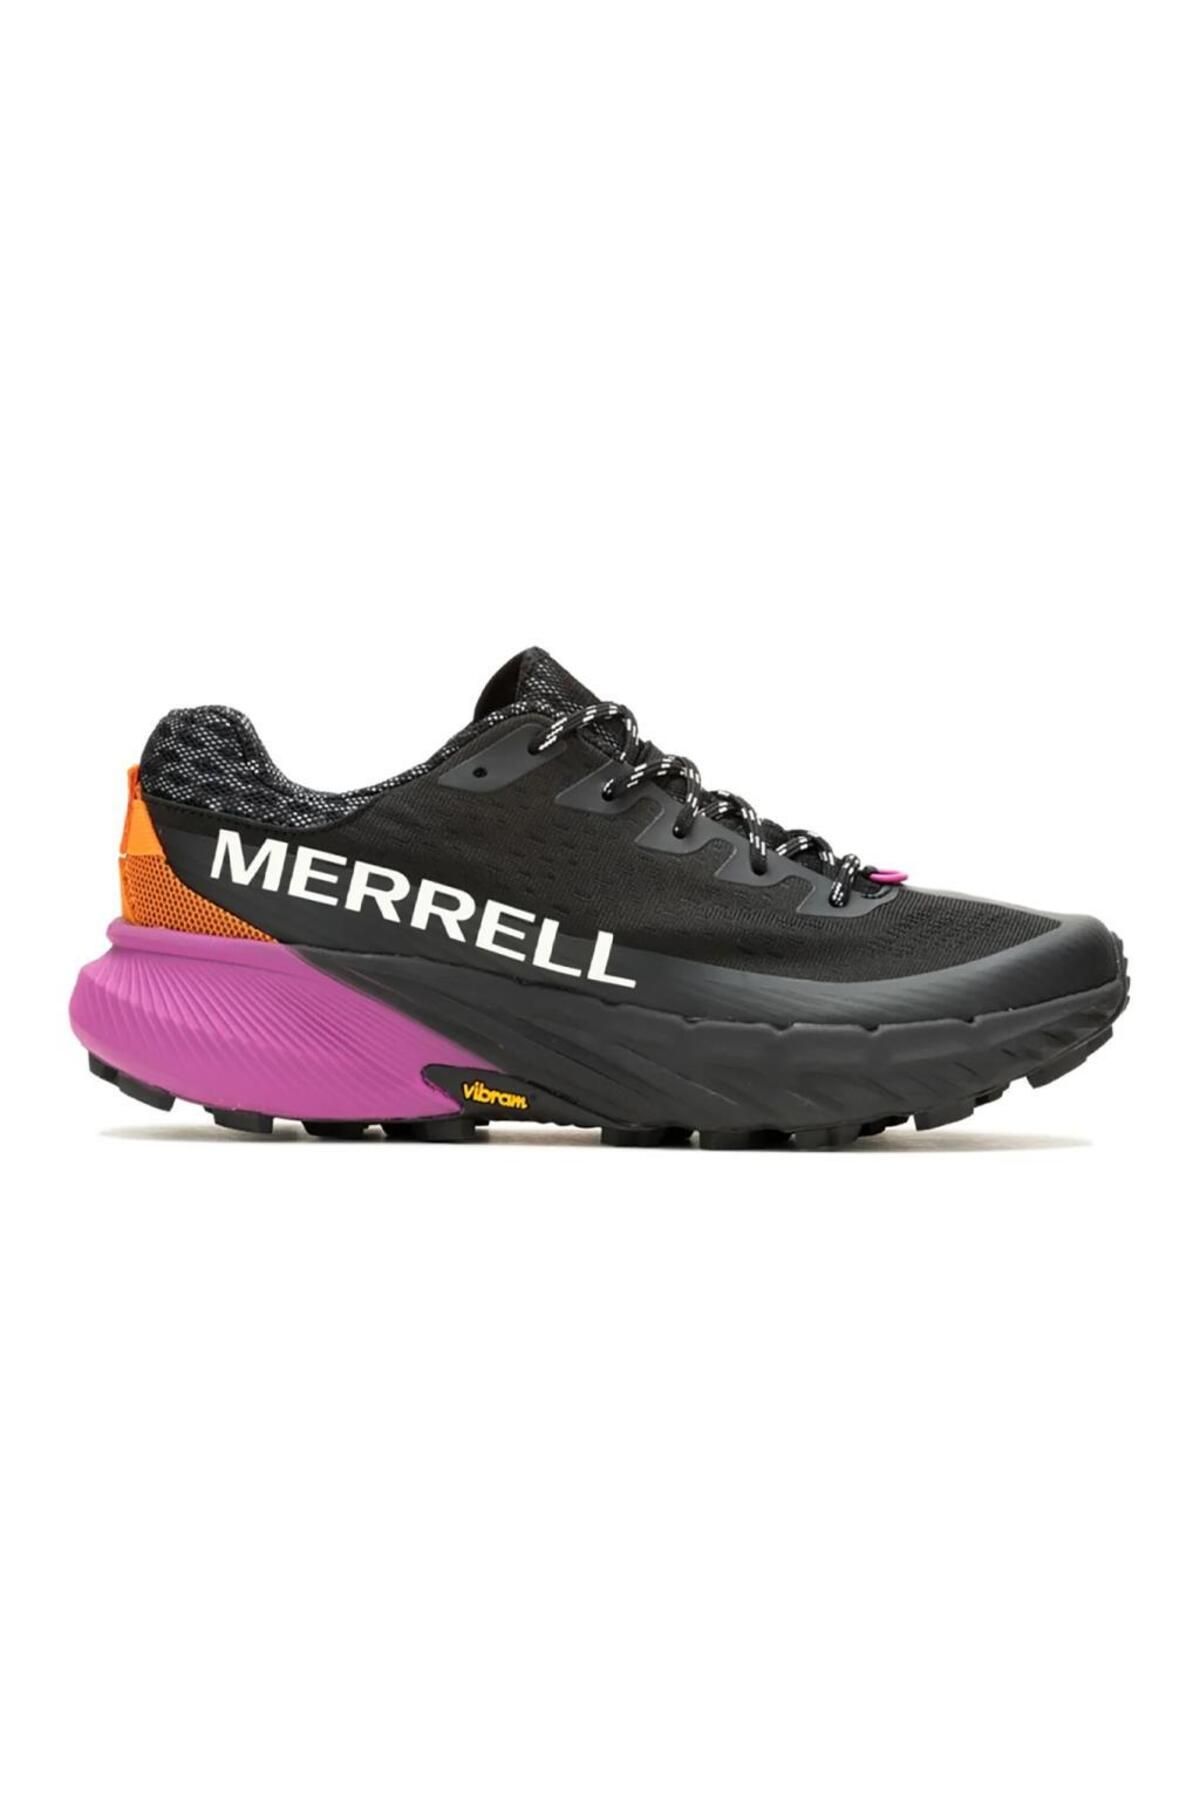 Merrell J068236 Agility Peak 5 Black/Multi Kadın Outdoor Ayakkabı